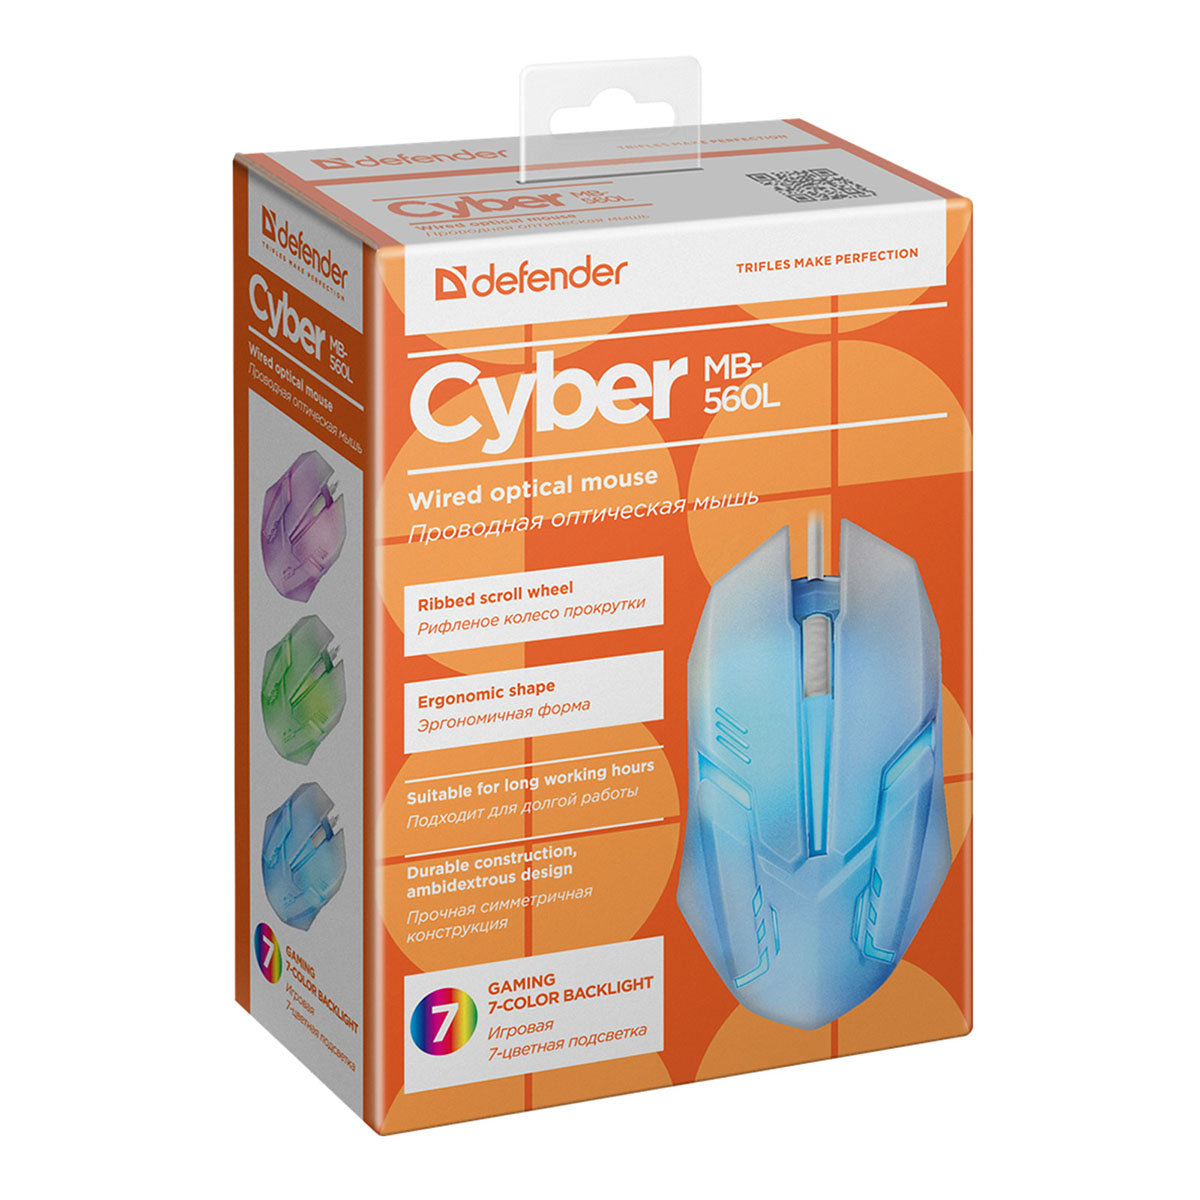 Мышь проводная DEFENDER Cyber MB-560L, оптическая, 3 кнопки, 1200 dpi, с подсветкой, 7 цветов, цвет белый